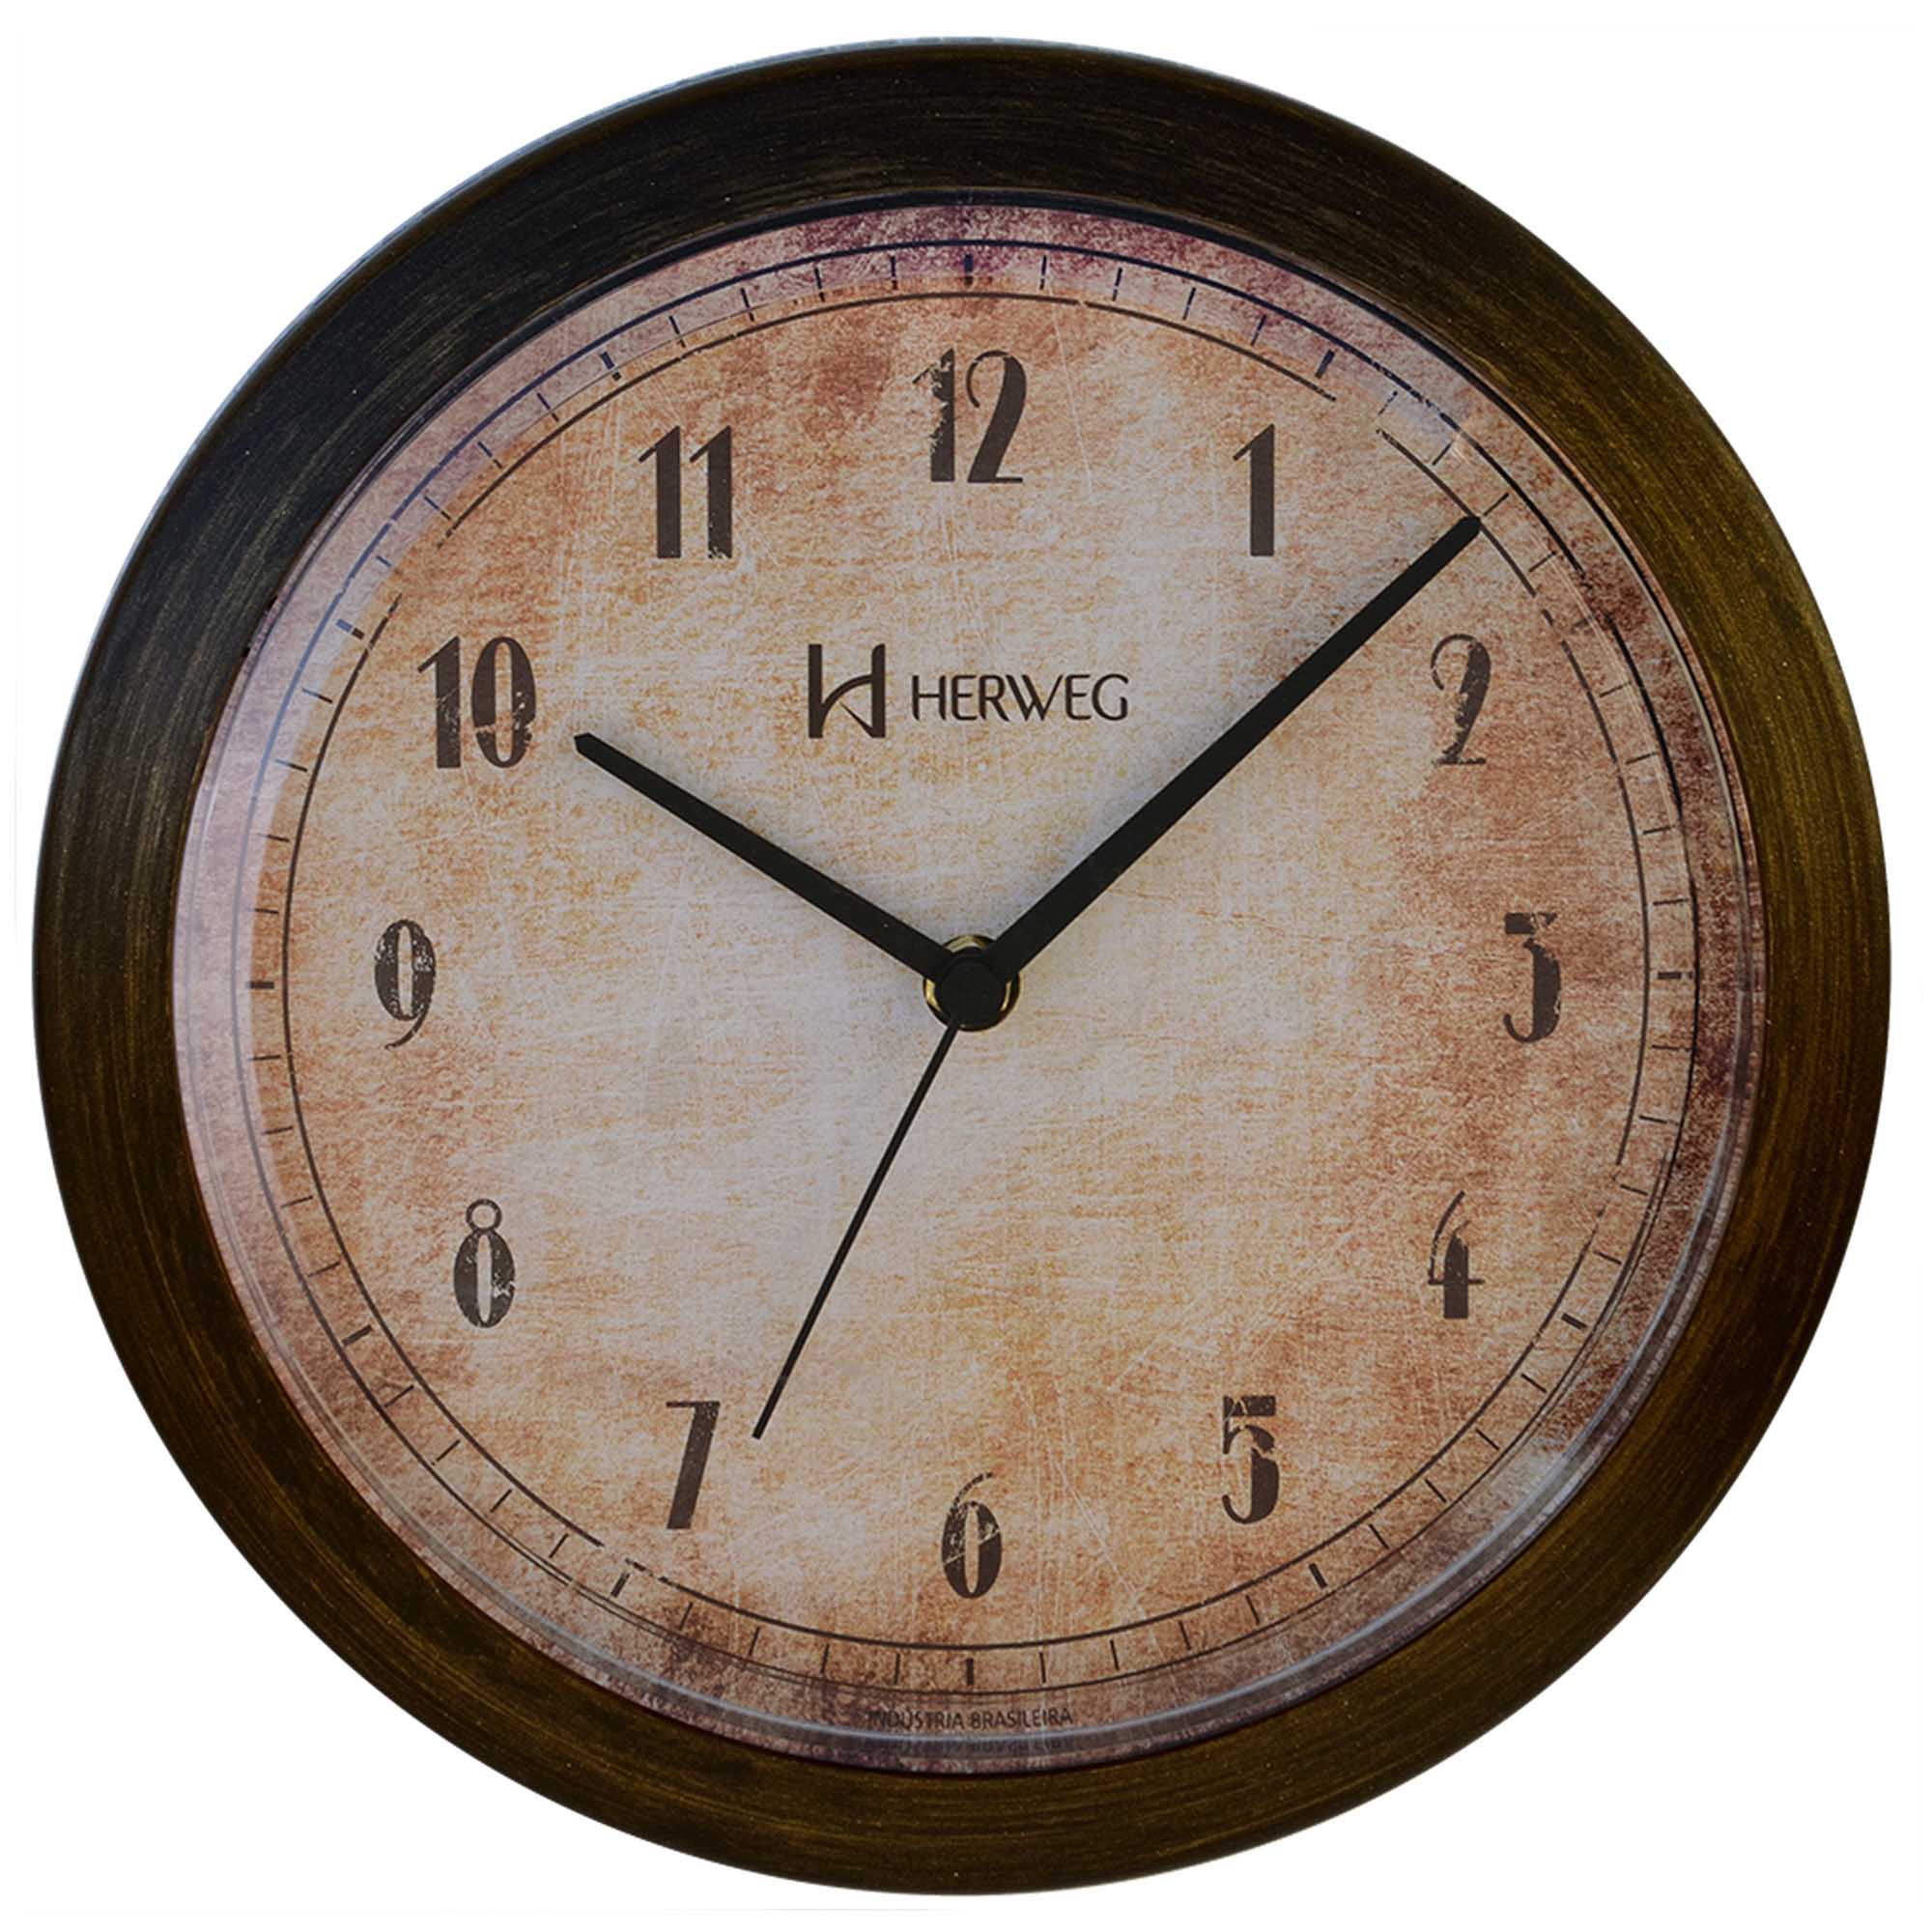 Relógio de Parede Analógico Herweg 6655 245 Ouro Envelhecido